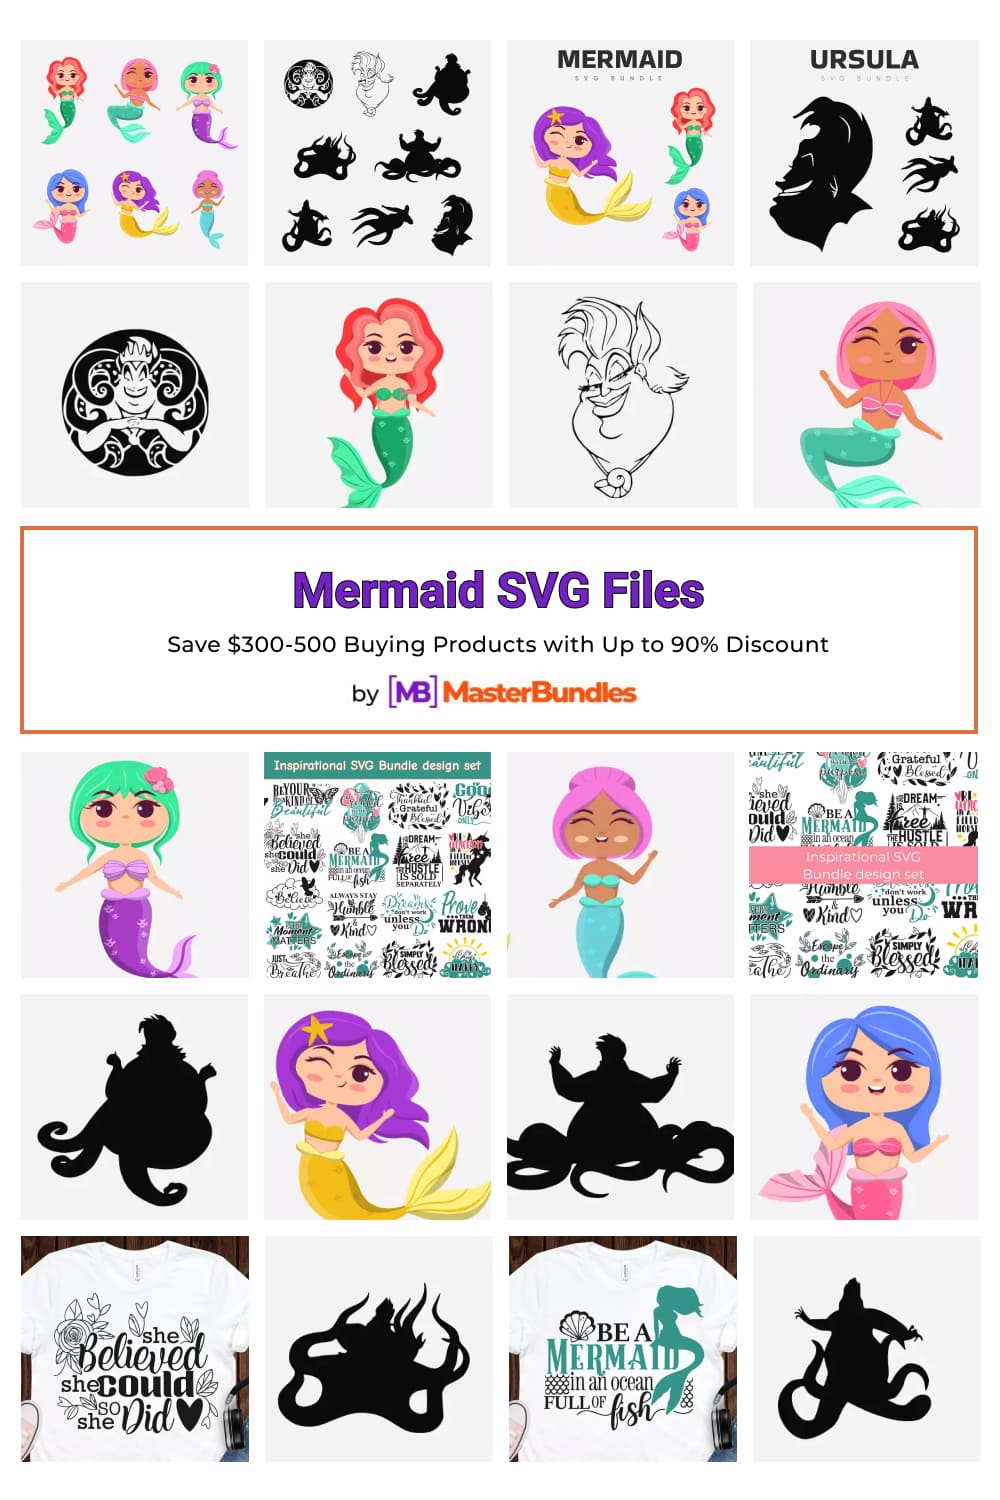 Mermaid SVG Files for Pinterest.